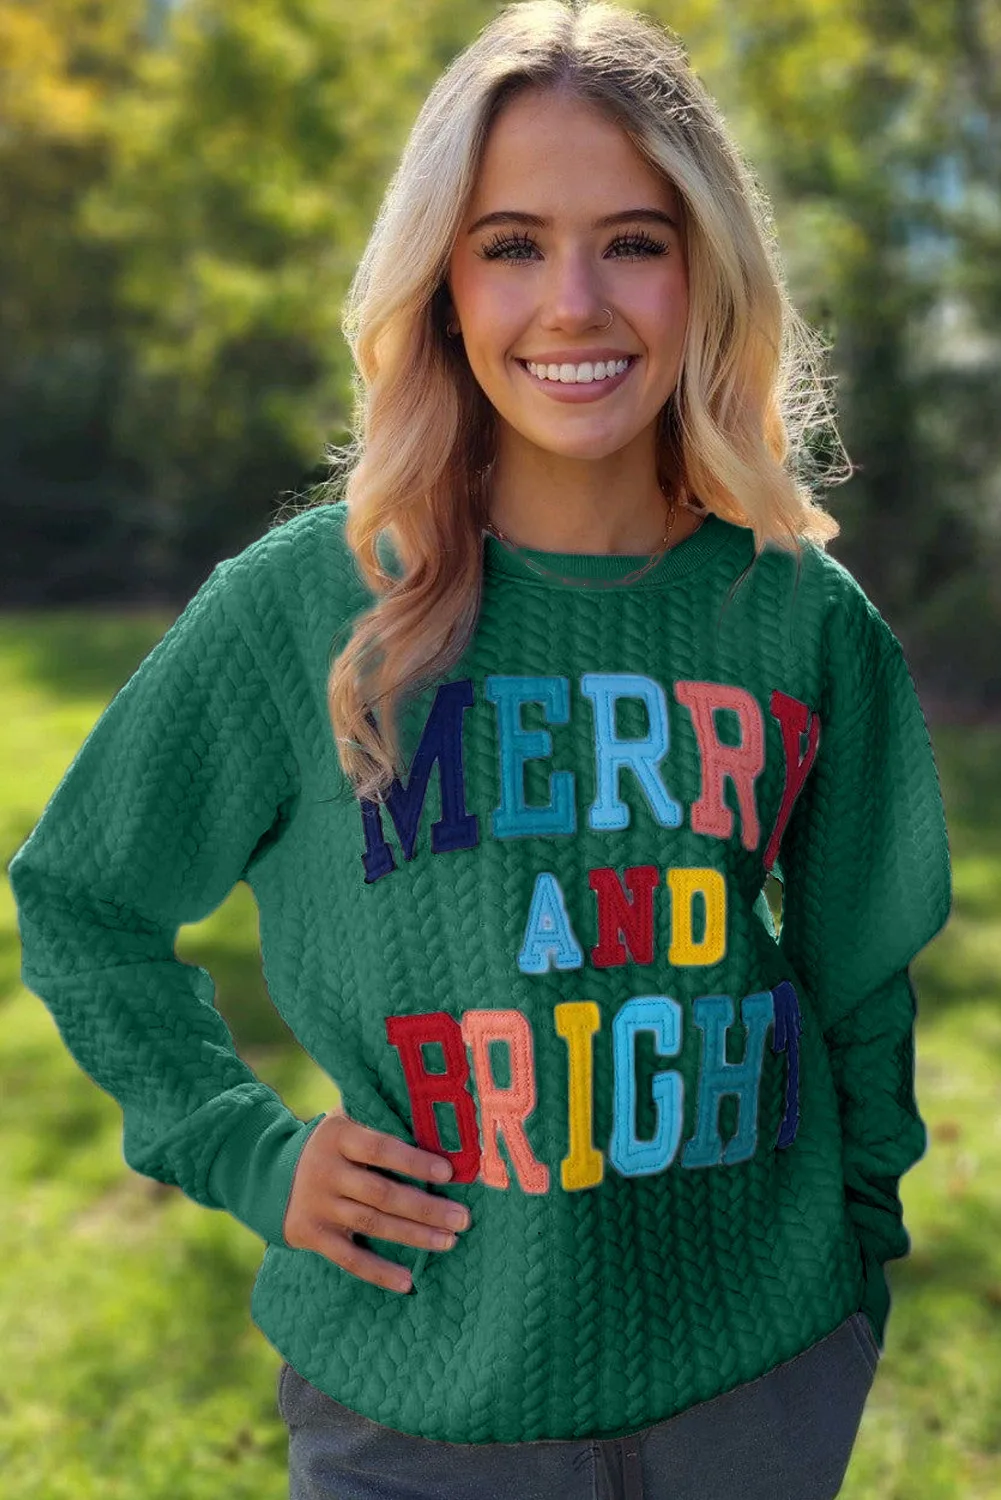 Christmas Sweatshirt